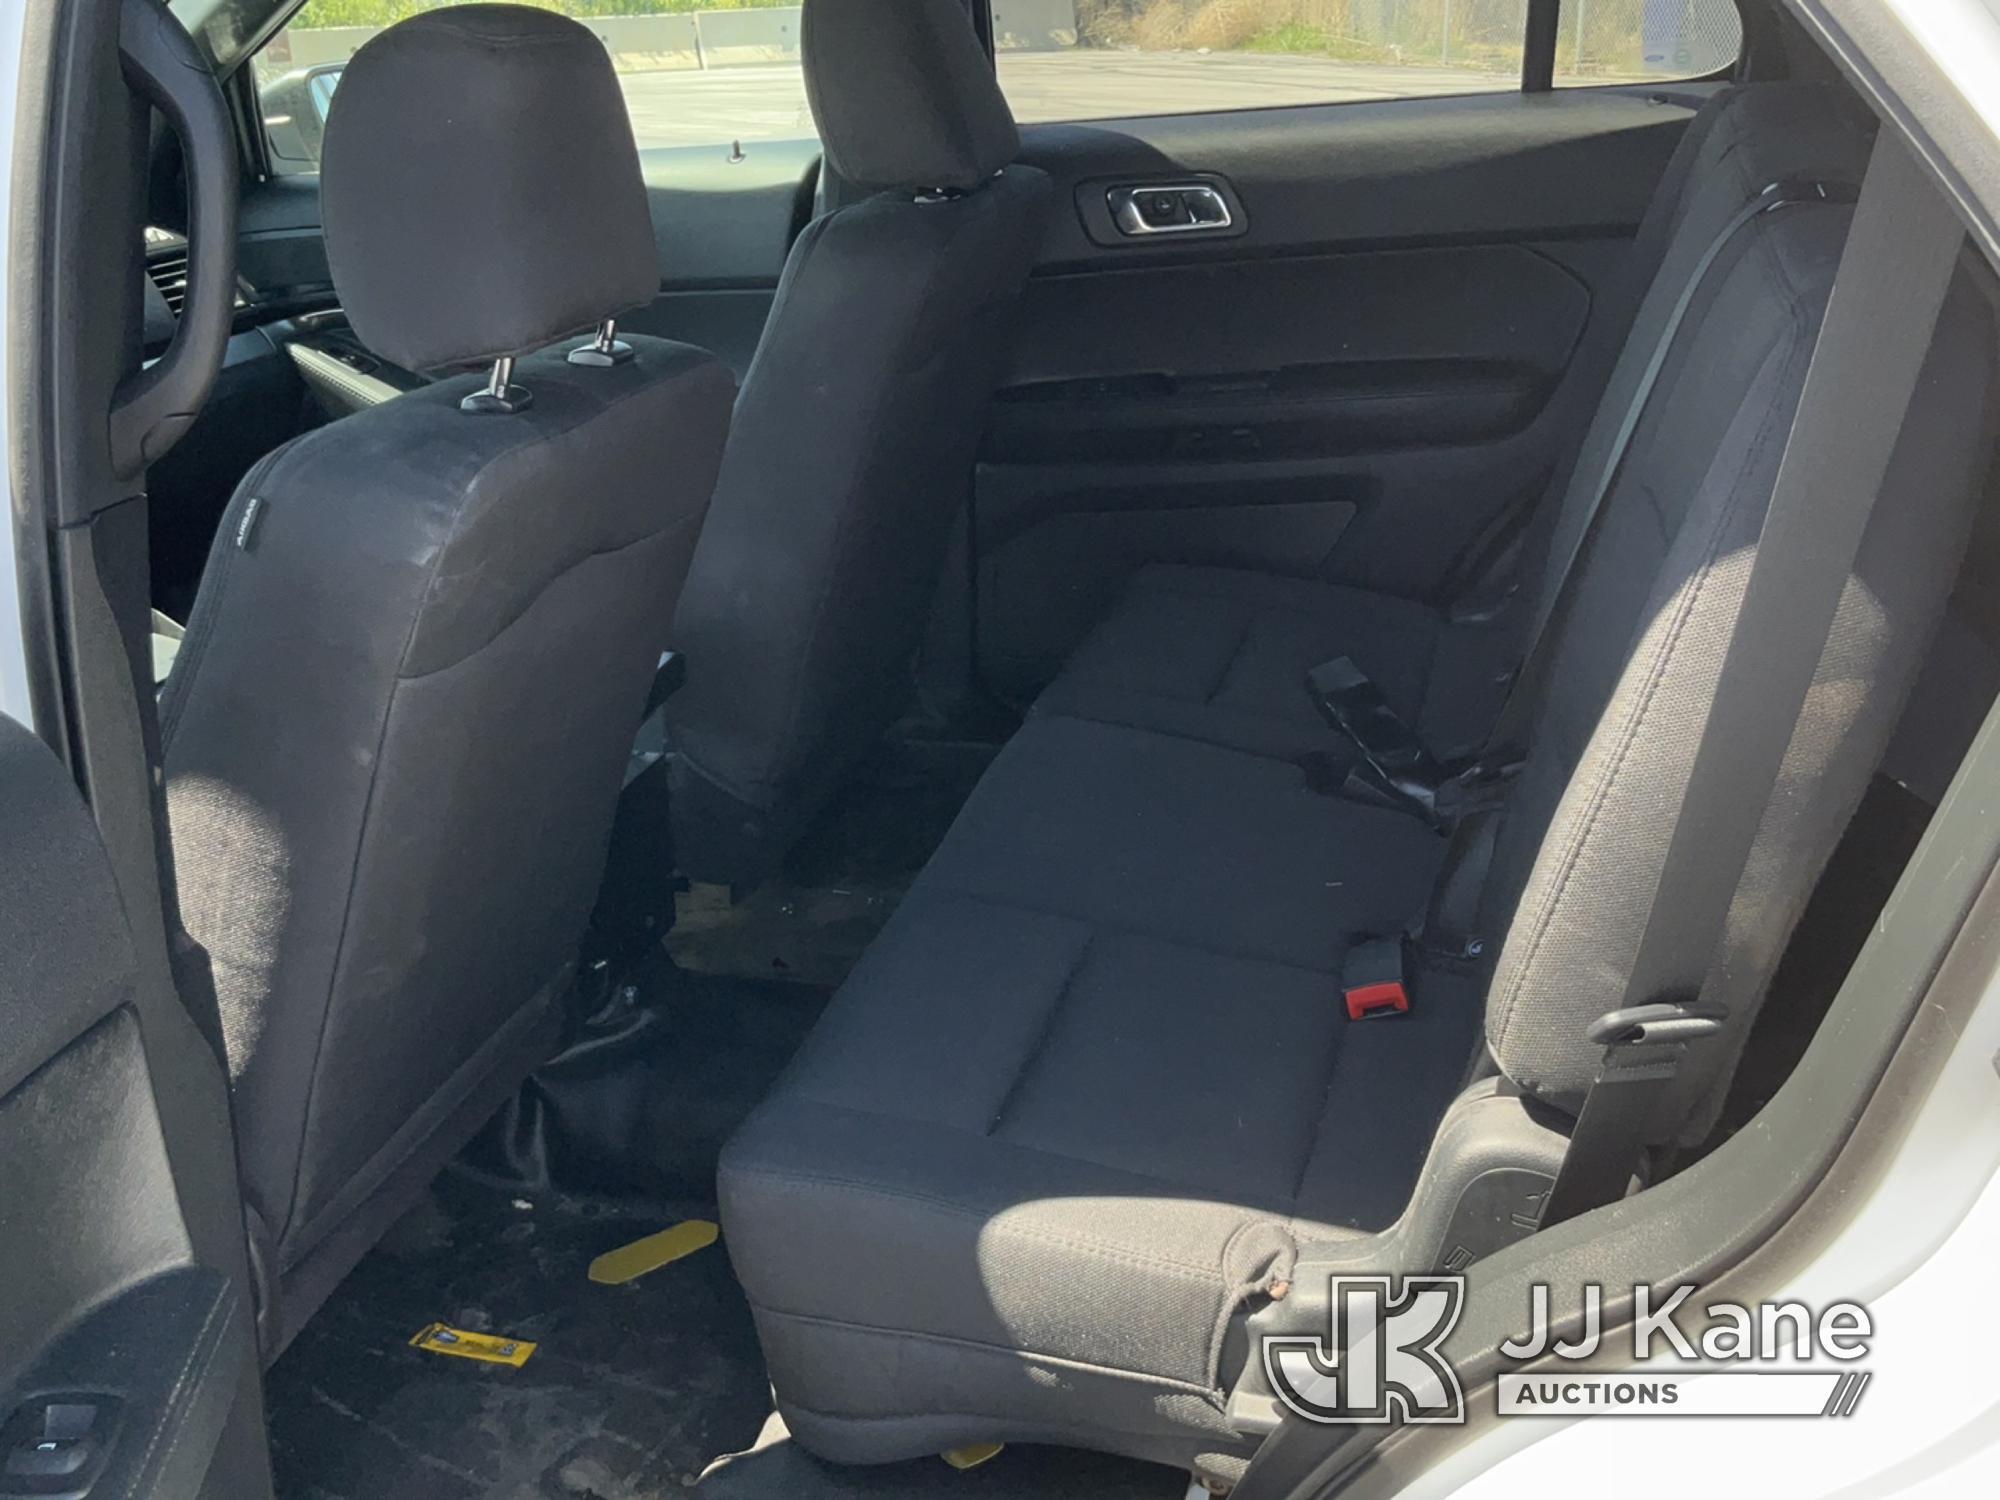 (Salt Lake City, UT) 2018 Ford Explorer 4x4 Police 4-Door Sport Utility Vehicle Runs & Moves